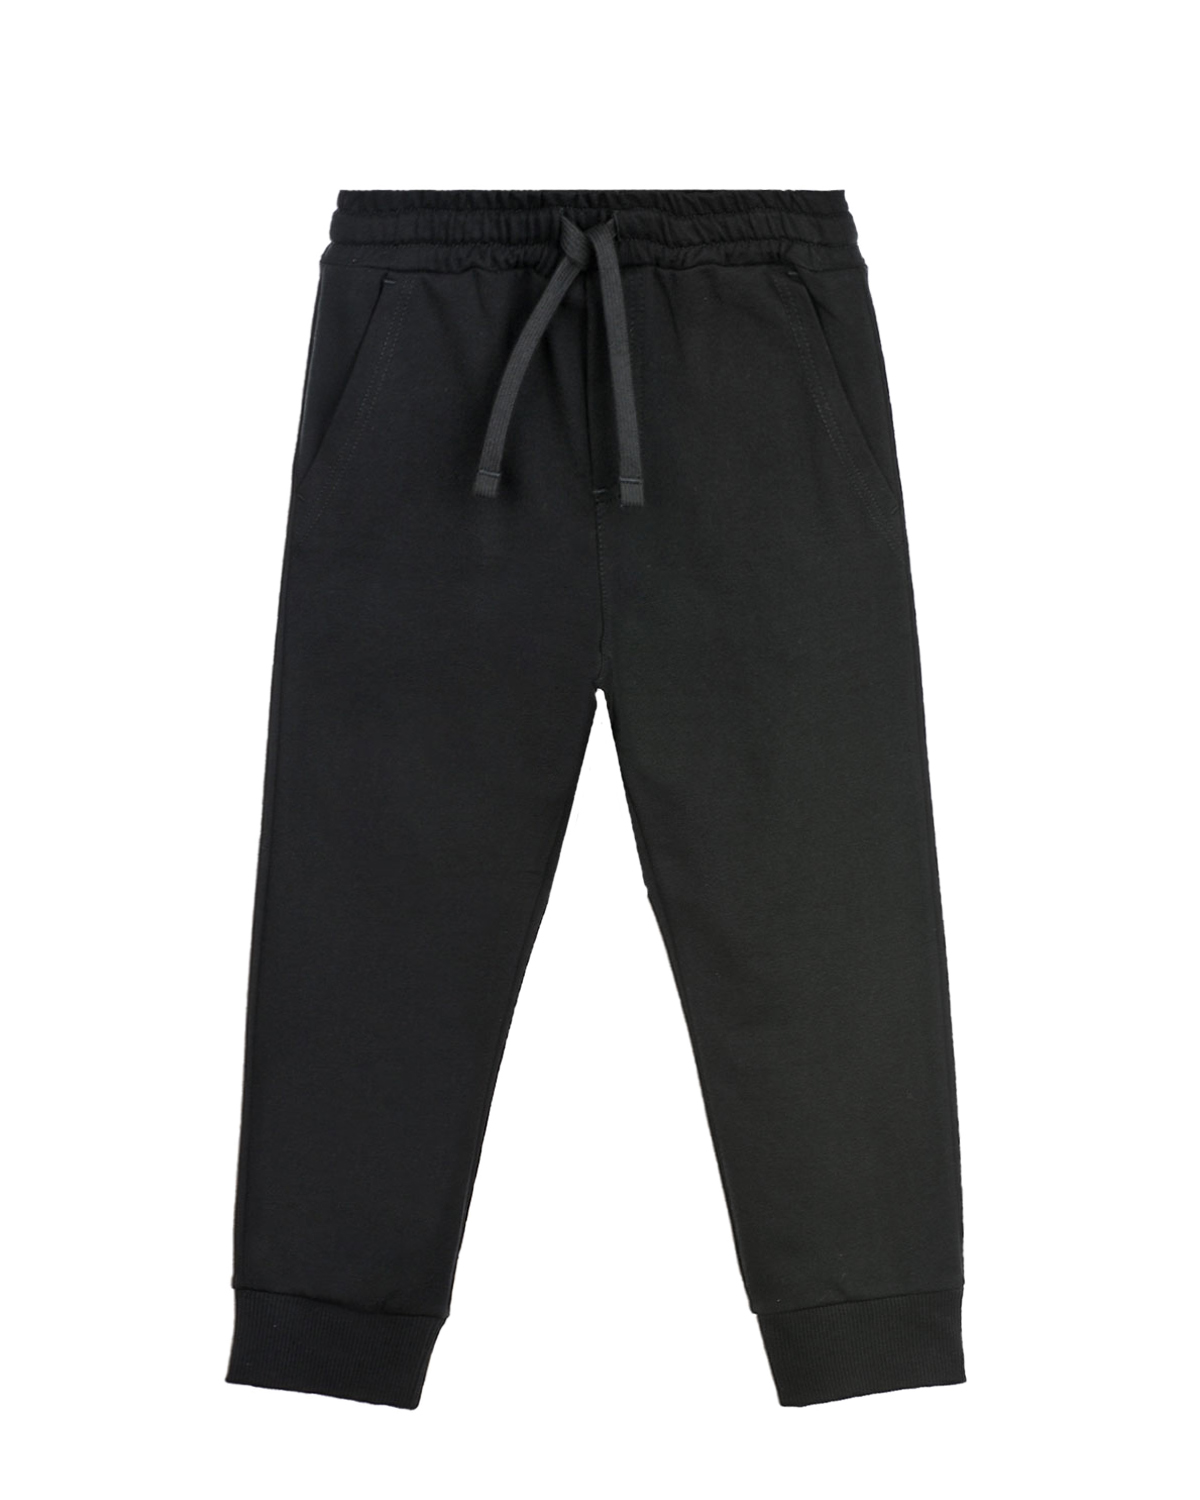 Купить Черные спортивные брюки Dolce&Gabbana детские, Черный, 100%хлопок, 97%хлопок+3%эластан